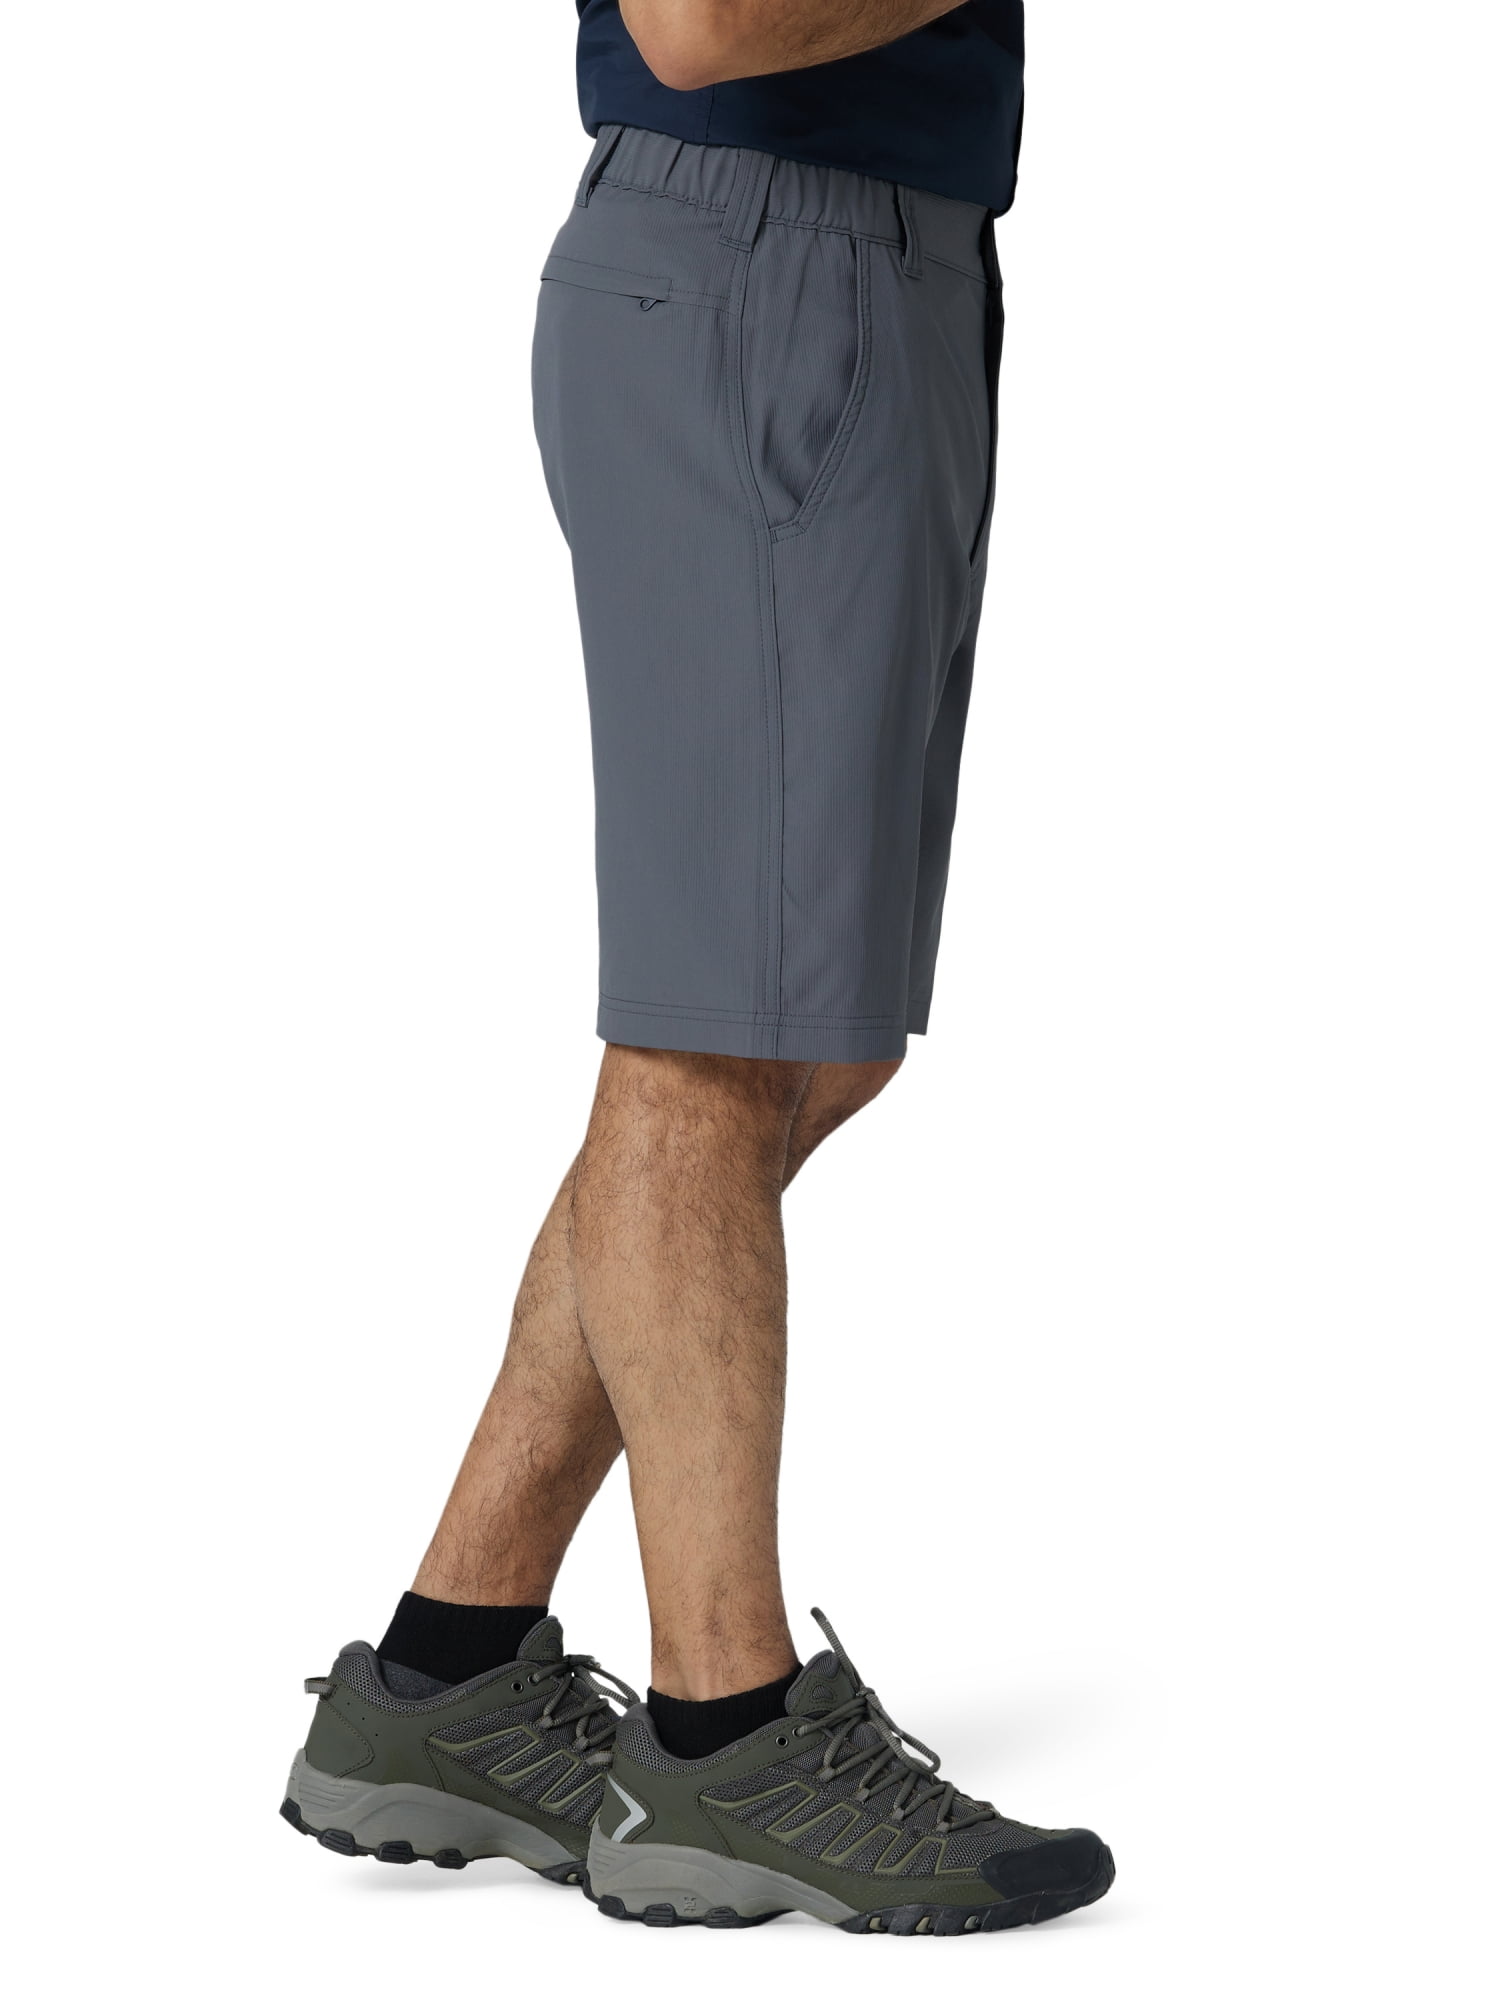 Wrangler Men's Elastic Waist Knit Denim Shorts, Size: 34, Blue